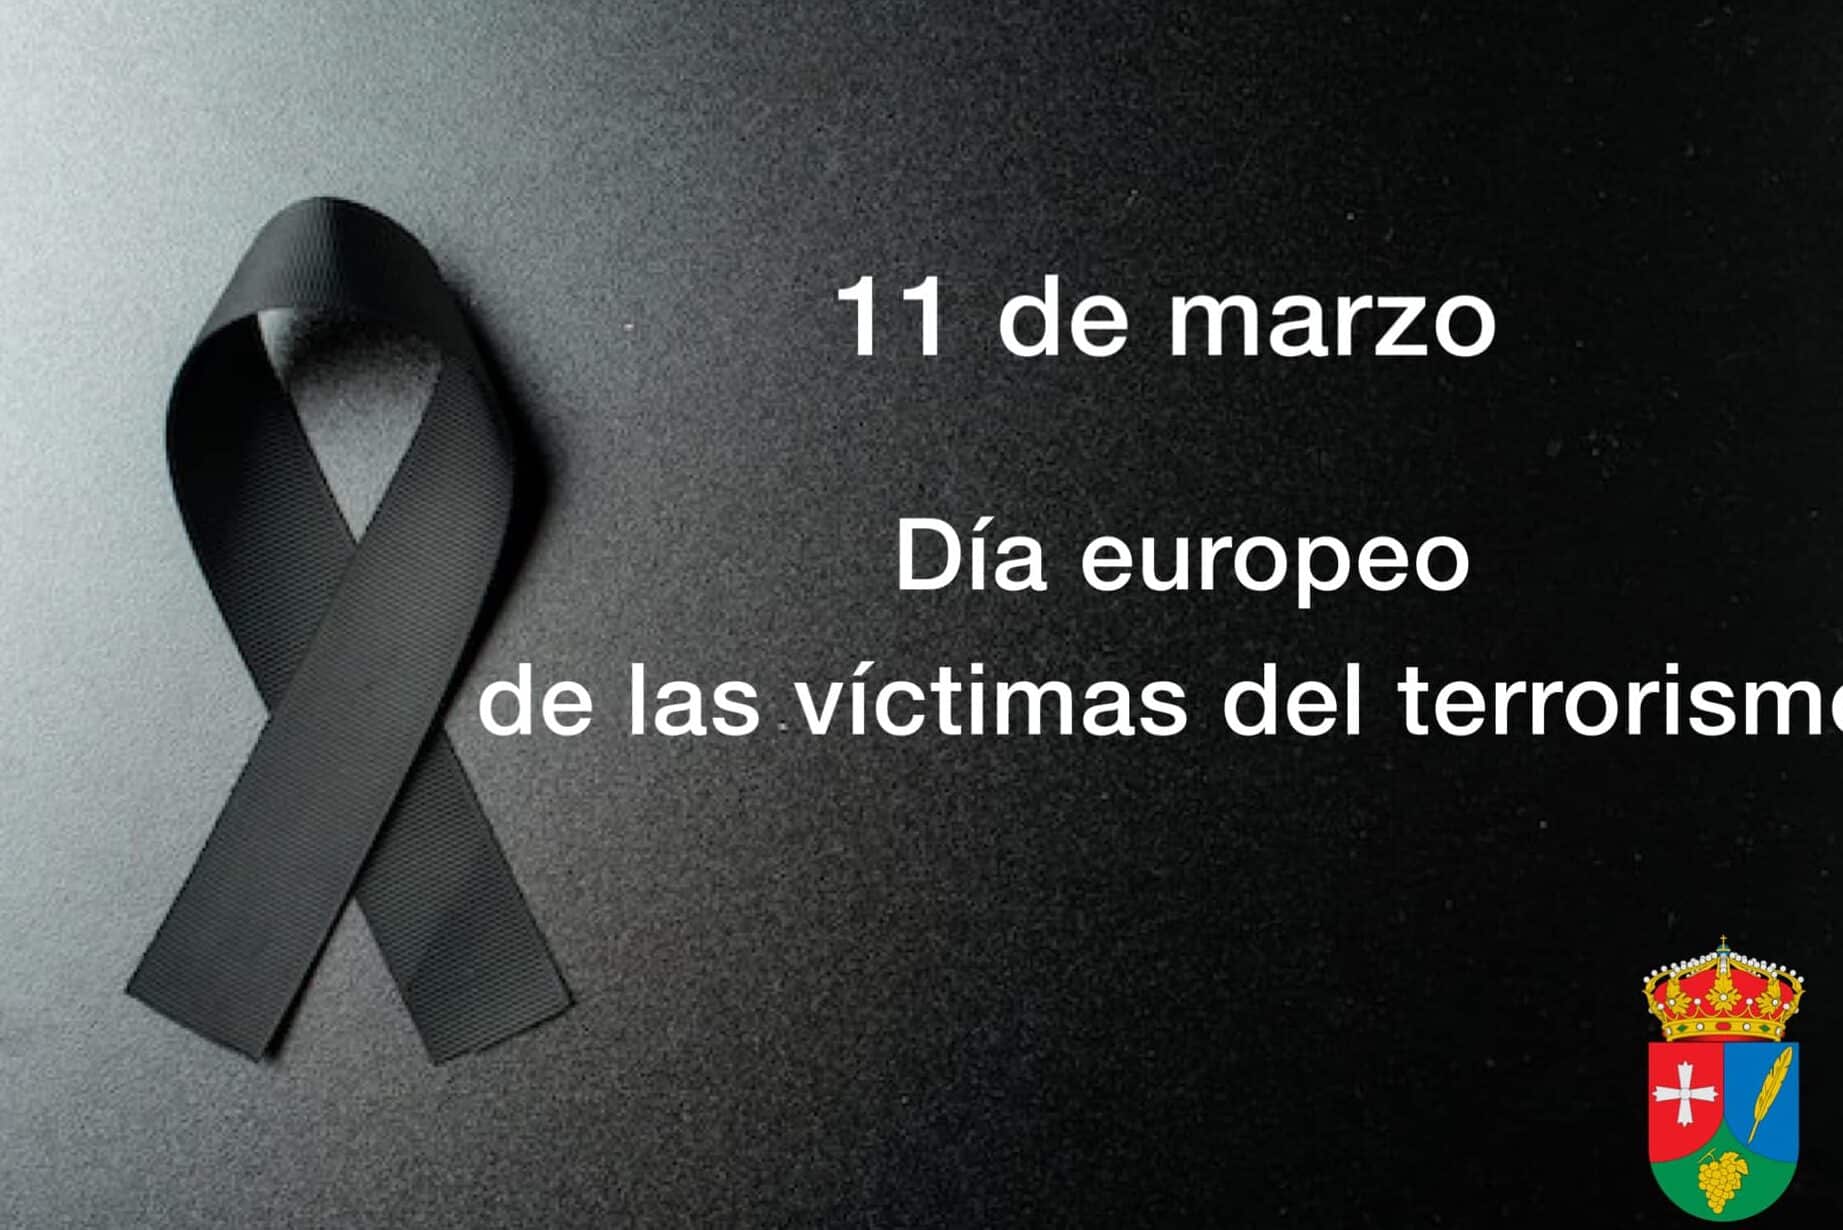 dia europeo de las victimas del terrorismo 11 de marzo